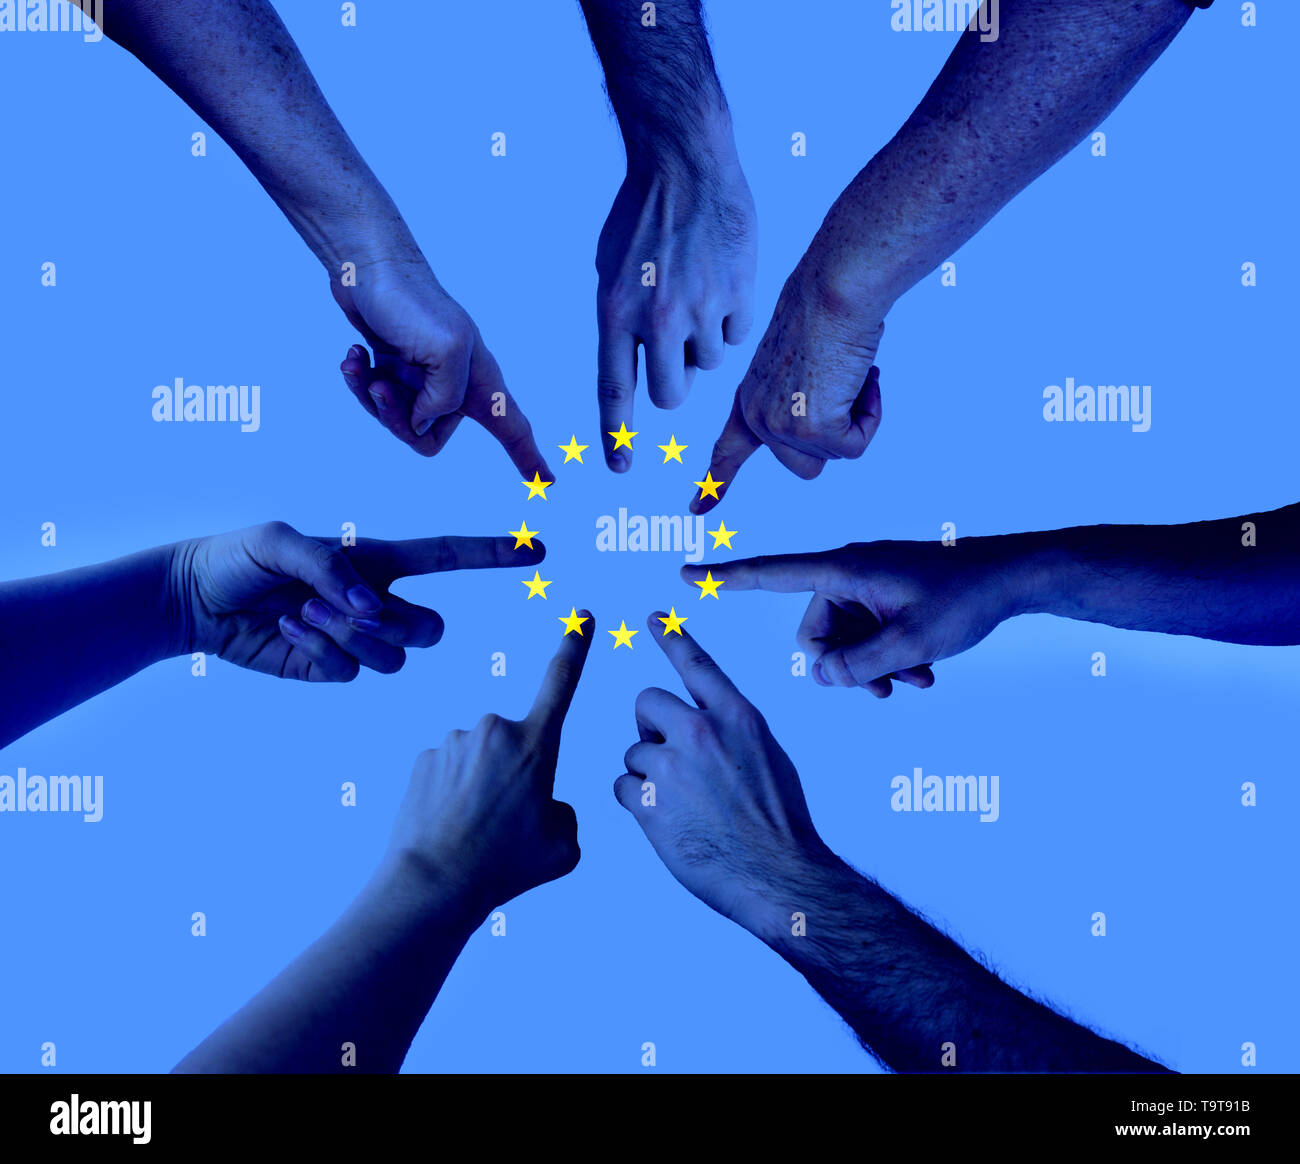 Mains pointant sur le même endroit avec un drapeau de l'Union européenne en couches - entente Élections au Parlement européen concept Banque D'Images